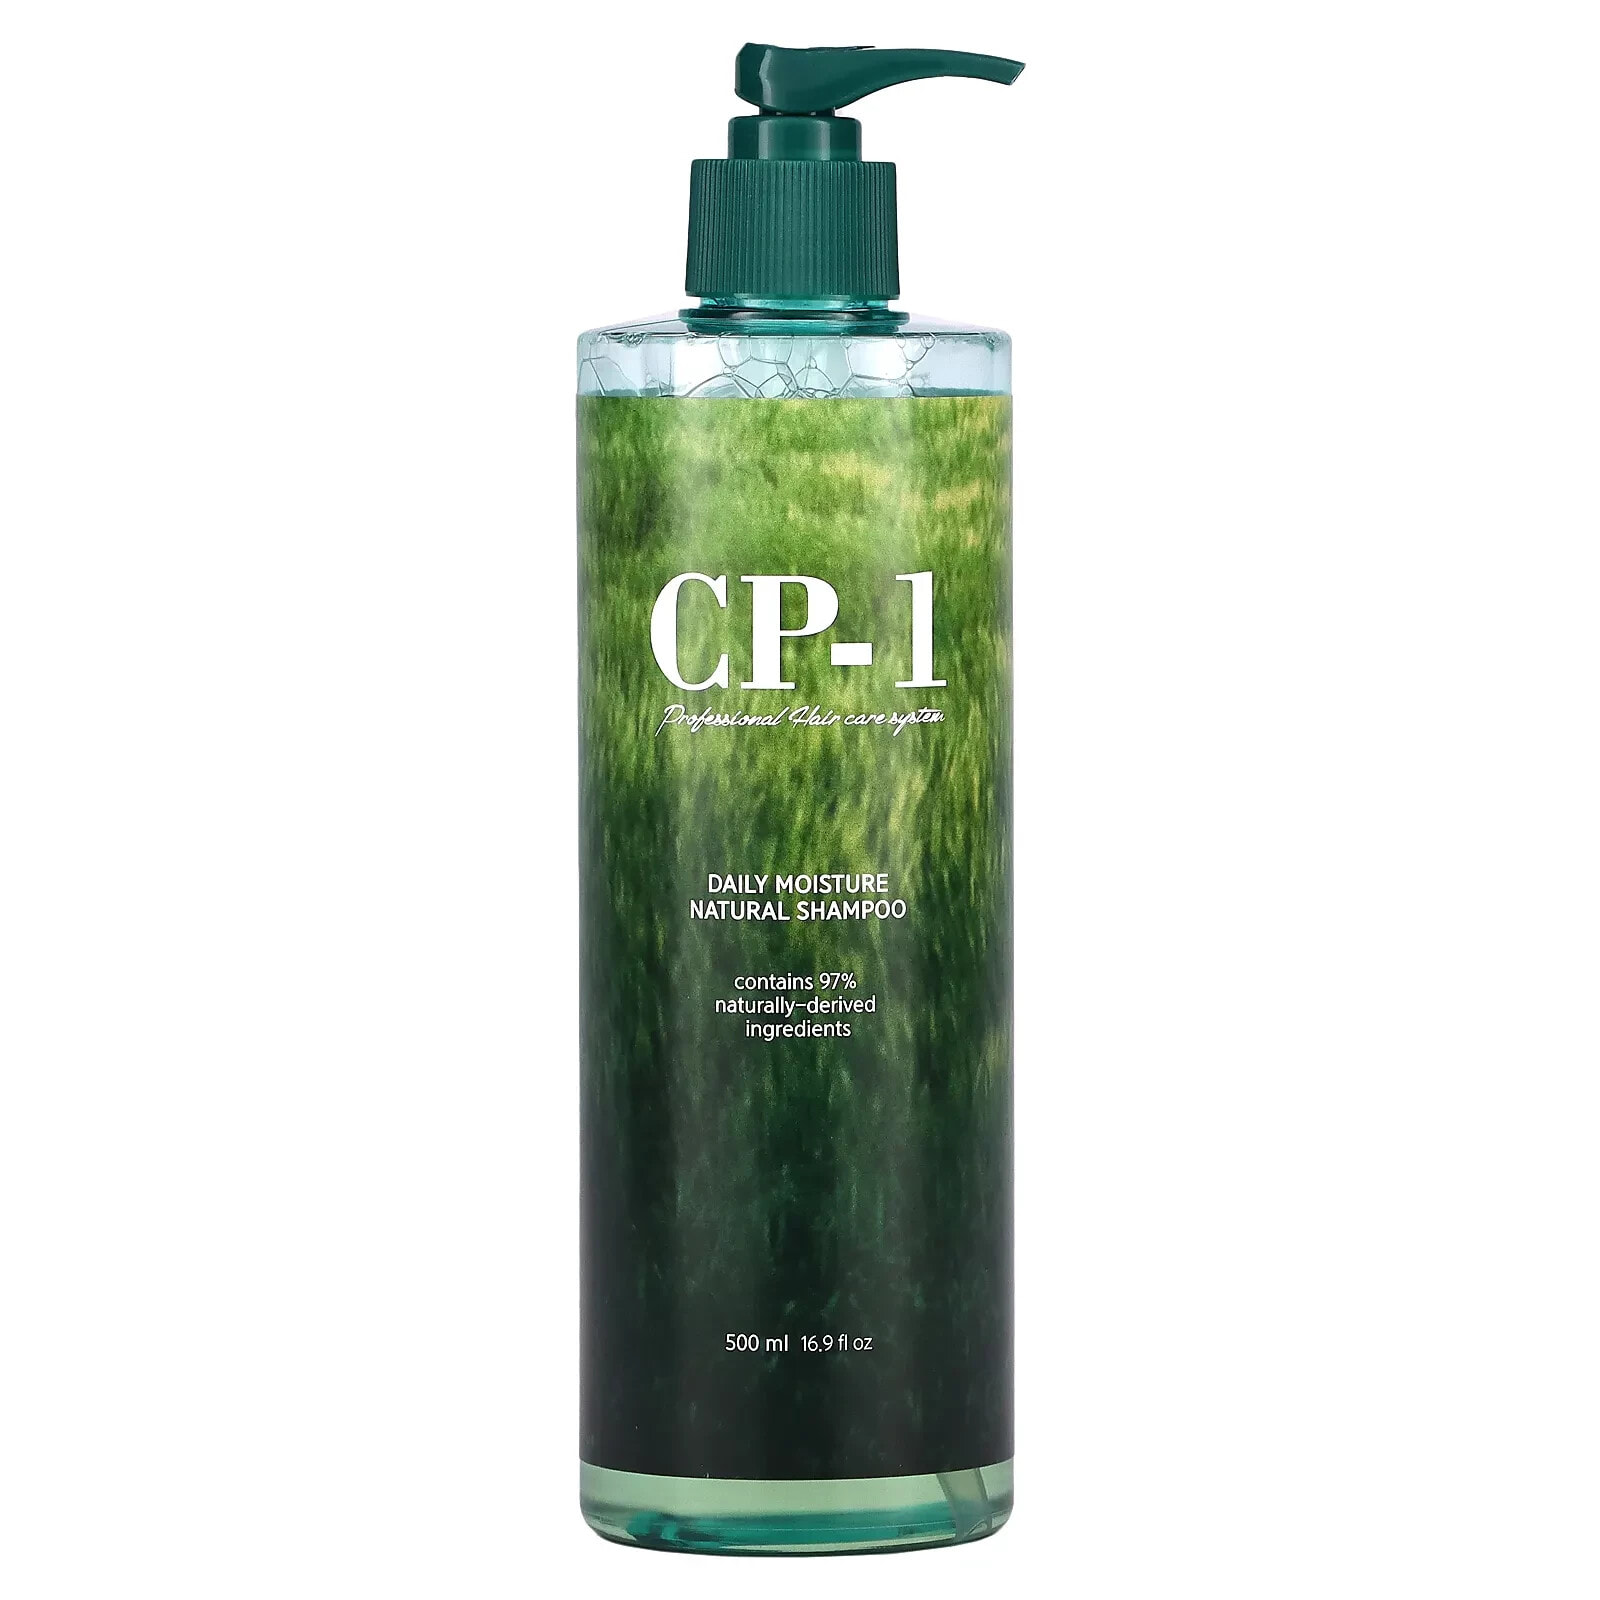 CP-1 Daily Moisture Natural Shampoo Ежедневный увлажняющий шампунь из натуральных ингредиентов500 мл